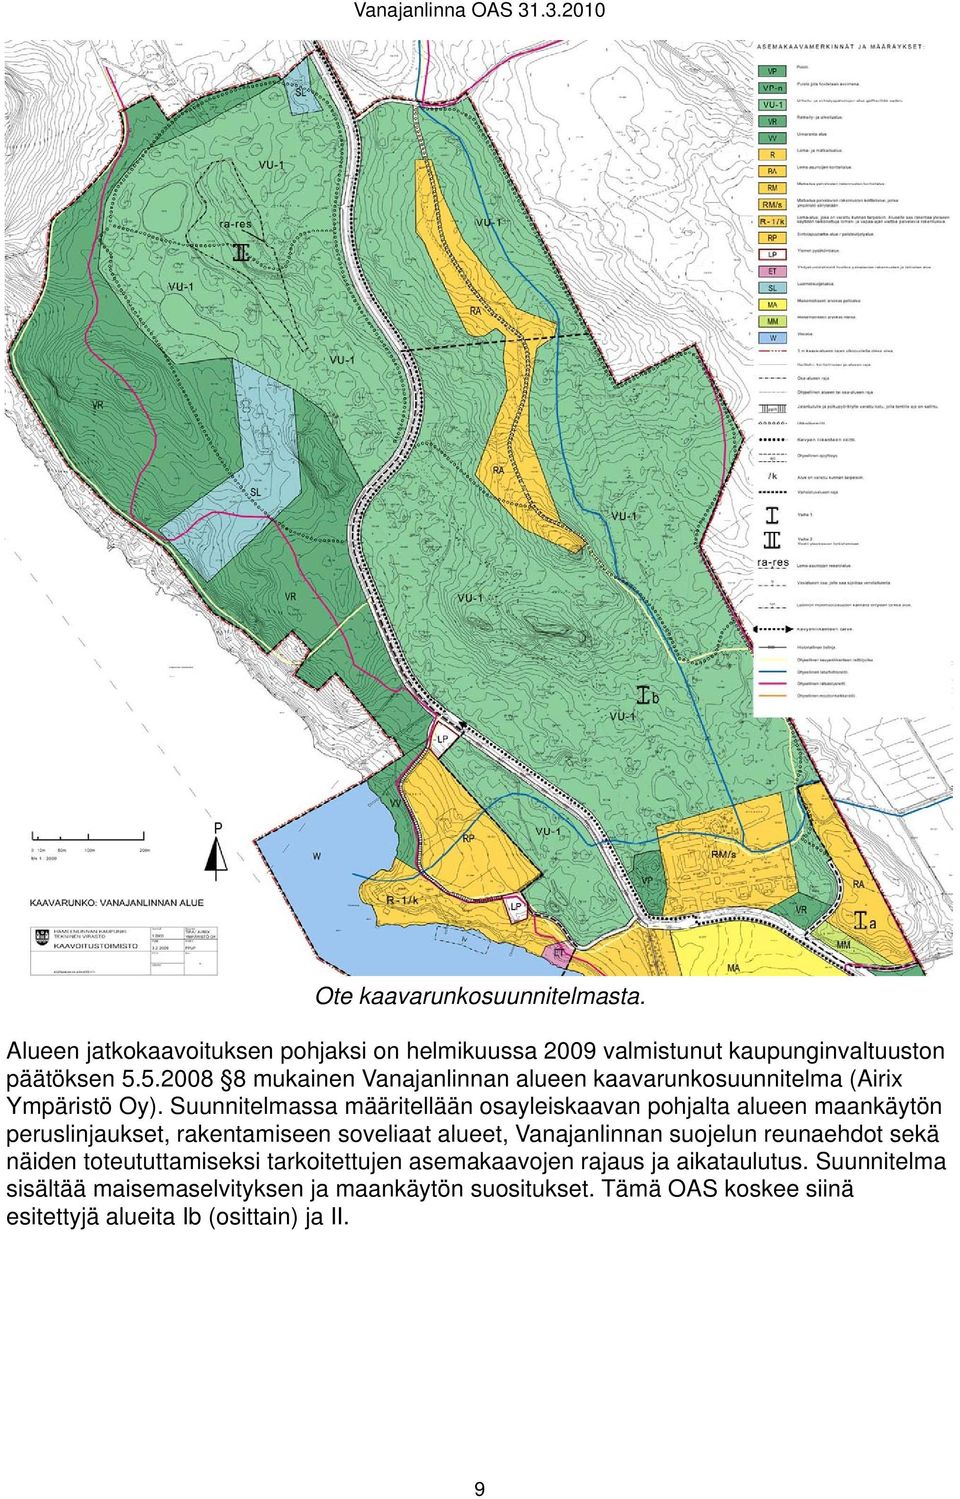 Suunnitelmassa määritellään osayleiskaavan pohjalta alueen maankäytön peruslinjaukset, rakentamiseen soveliaat alueet, Vanajanlinnan suojelun